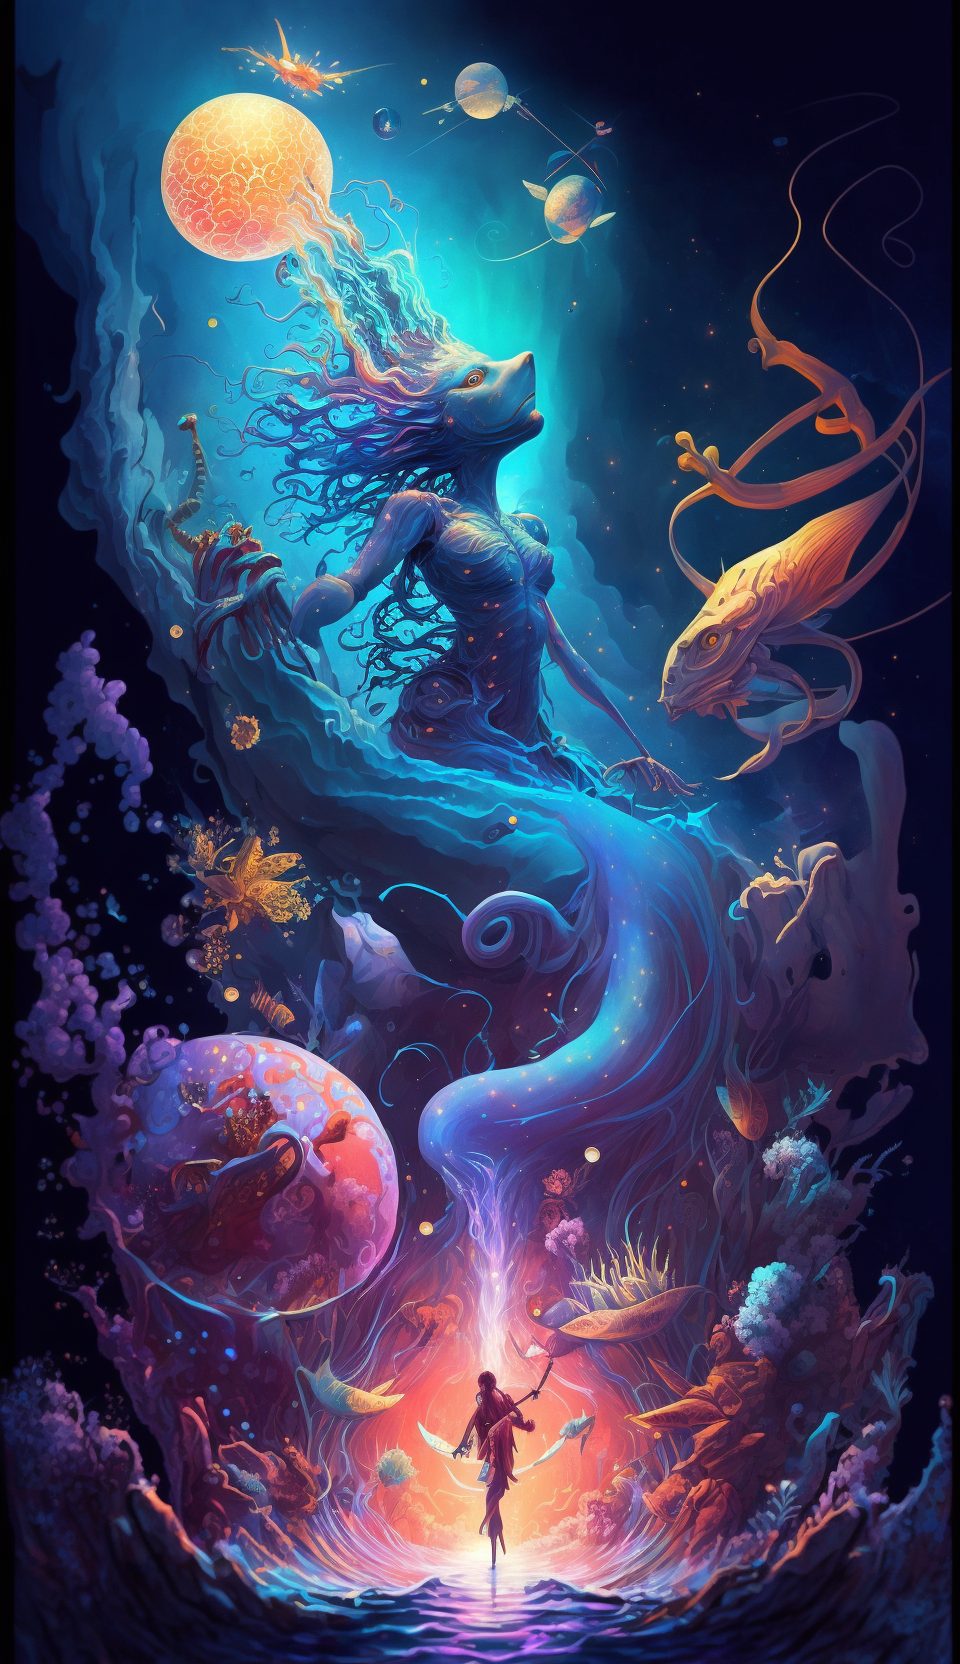 Frank3D aquatic Celestial Event vibrant cosmic surreal depictio 86a739ef f41a 4e30 8458 b37bff65fefd